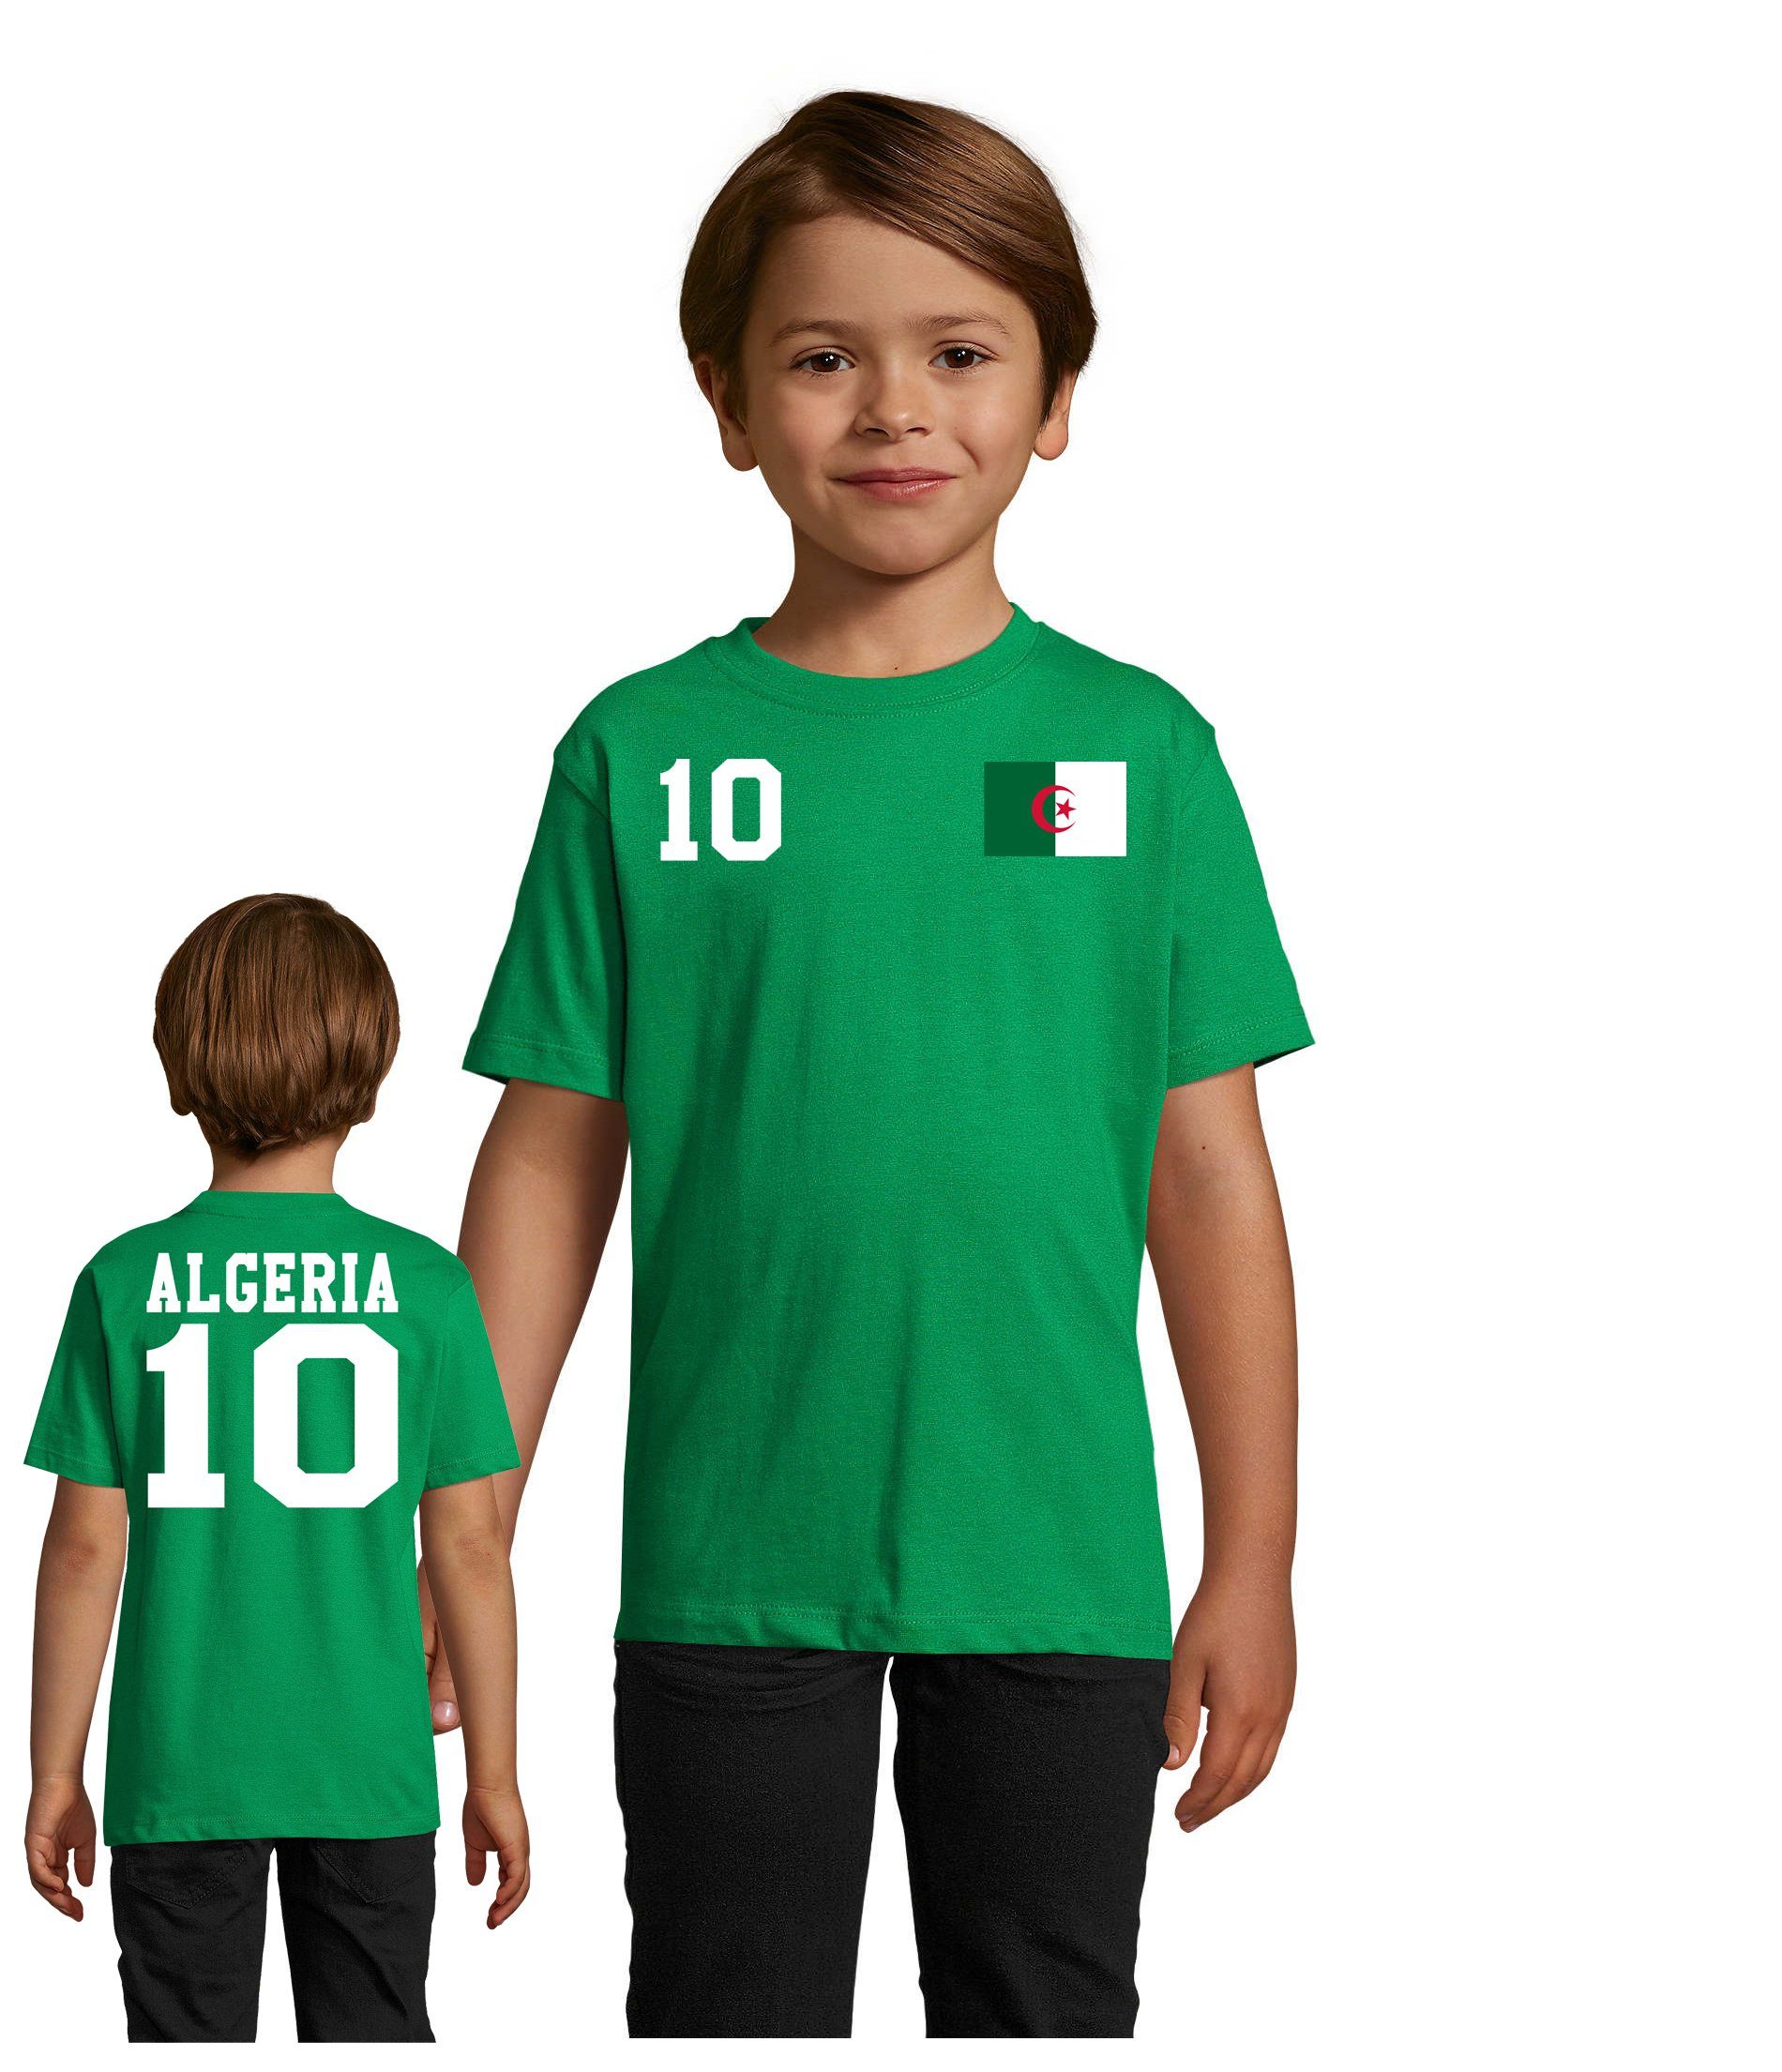 Blondie & Trikot Algeria Kinder Sport Fußball Afrika WM Brownie Algerien Weltmeister T-Shirt